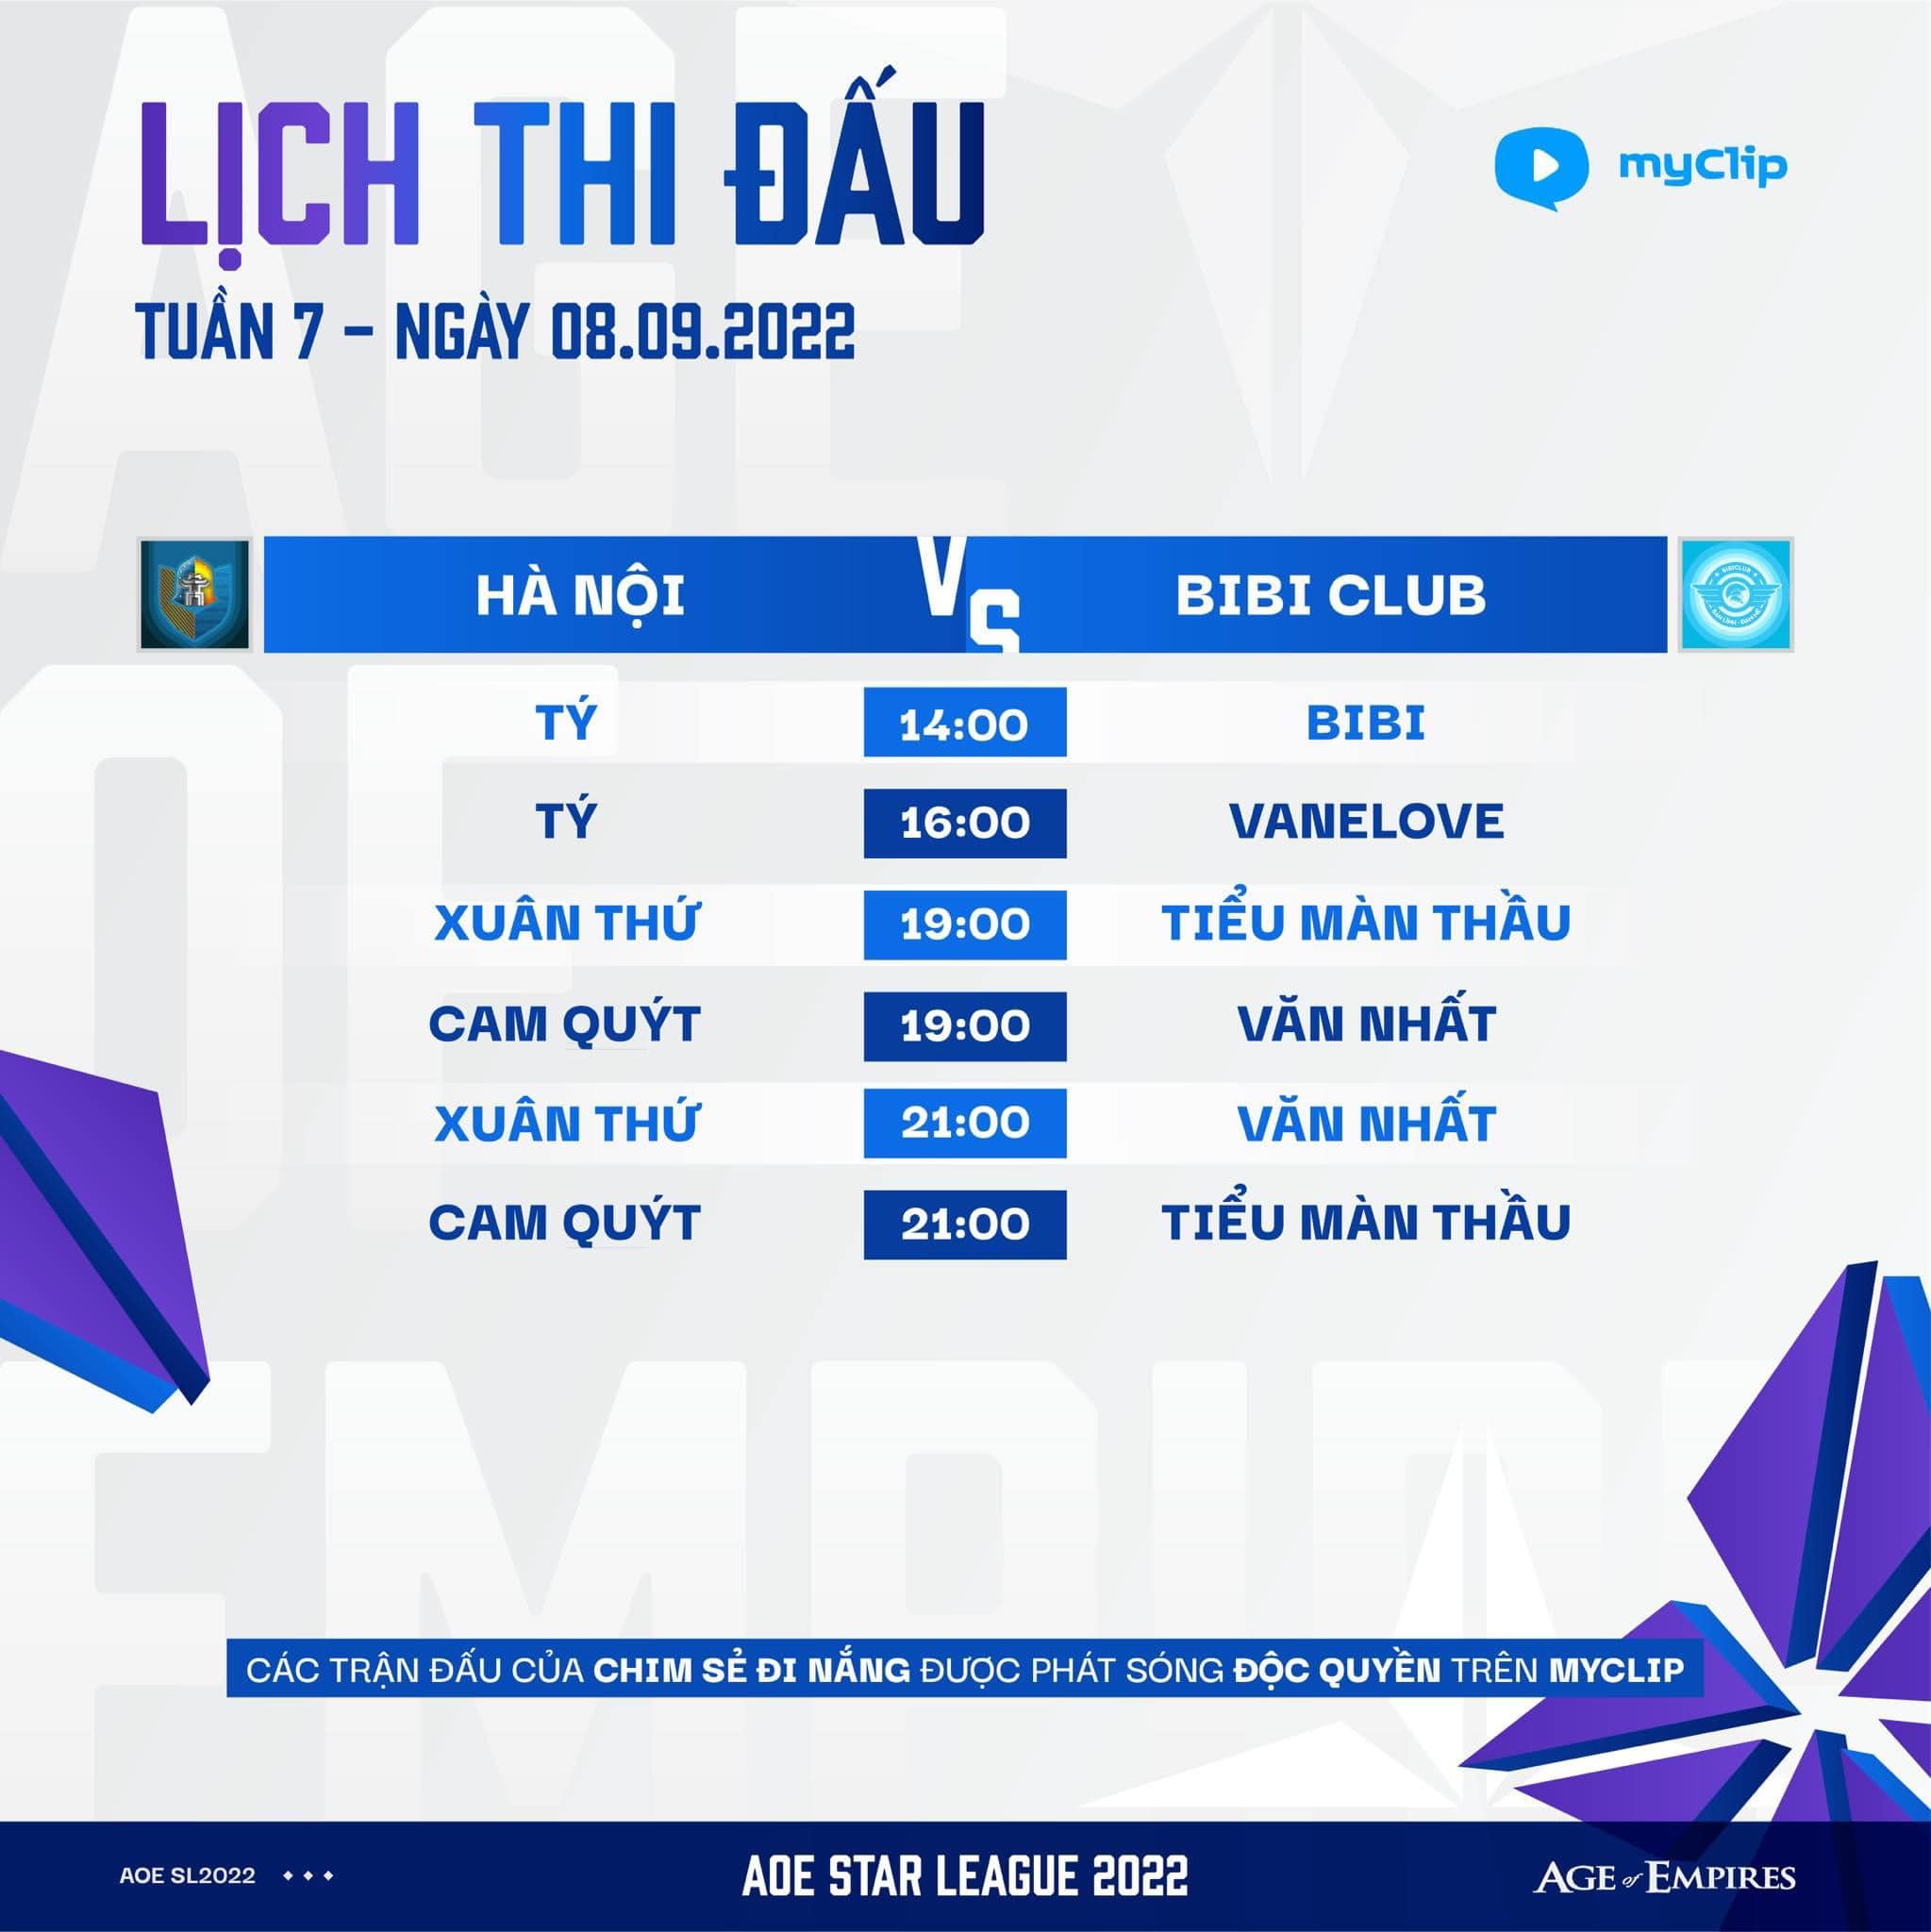 Lịch thi đấu ngày 2 Tuần 7 AoE Star League: Cơ hội để Hà Nội chiếm ngôi đầu